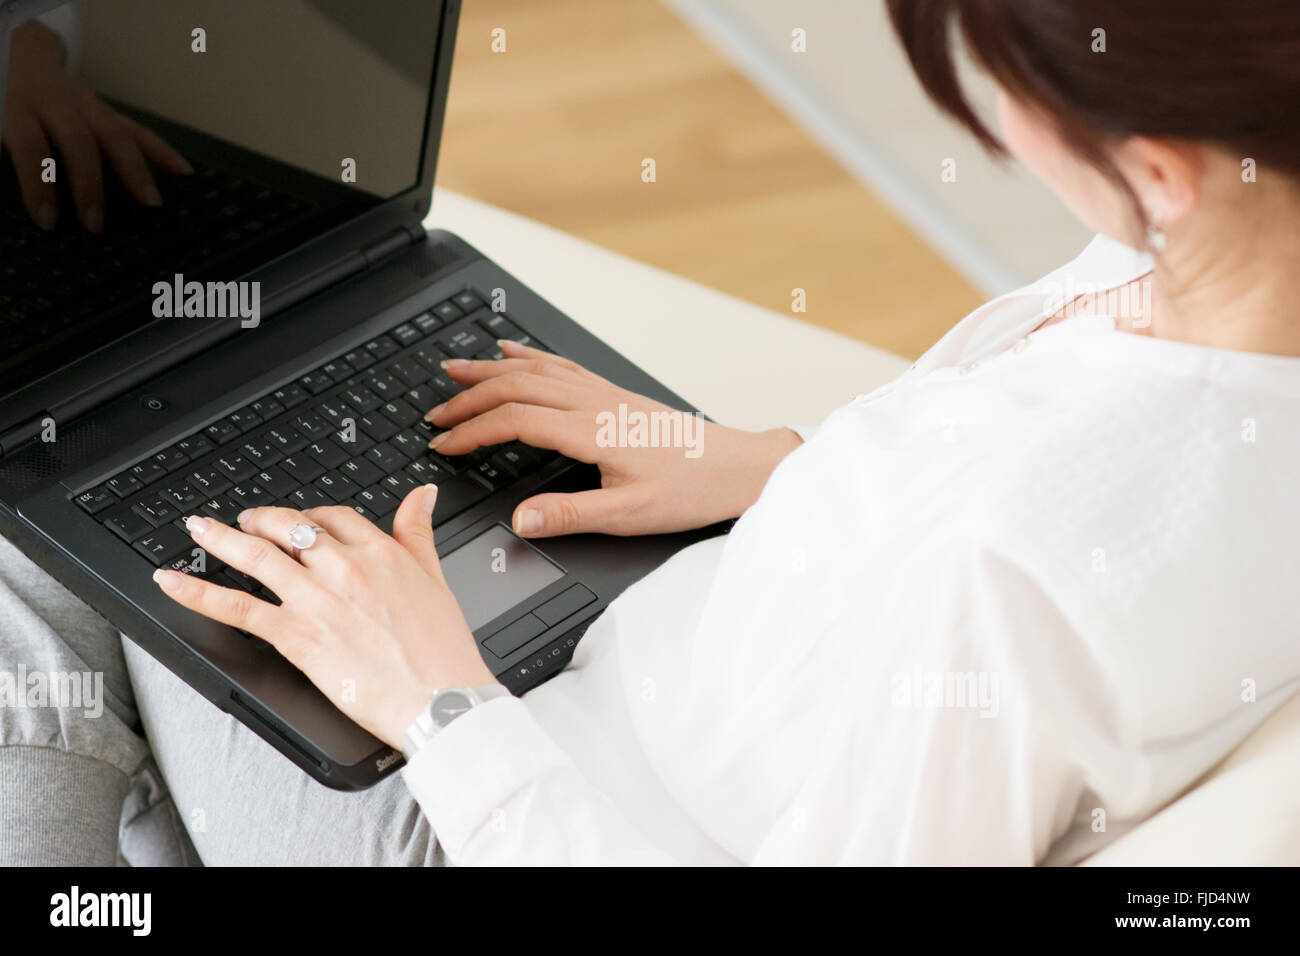 Woman using laptop in sa maison assise sur un sofa Banque D'Images